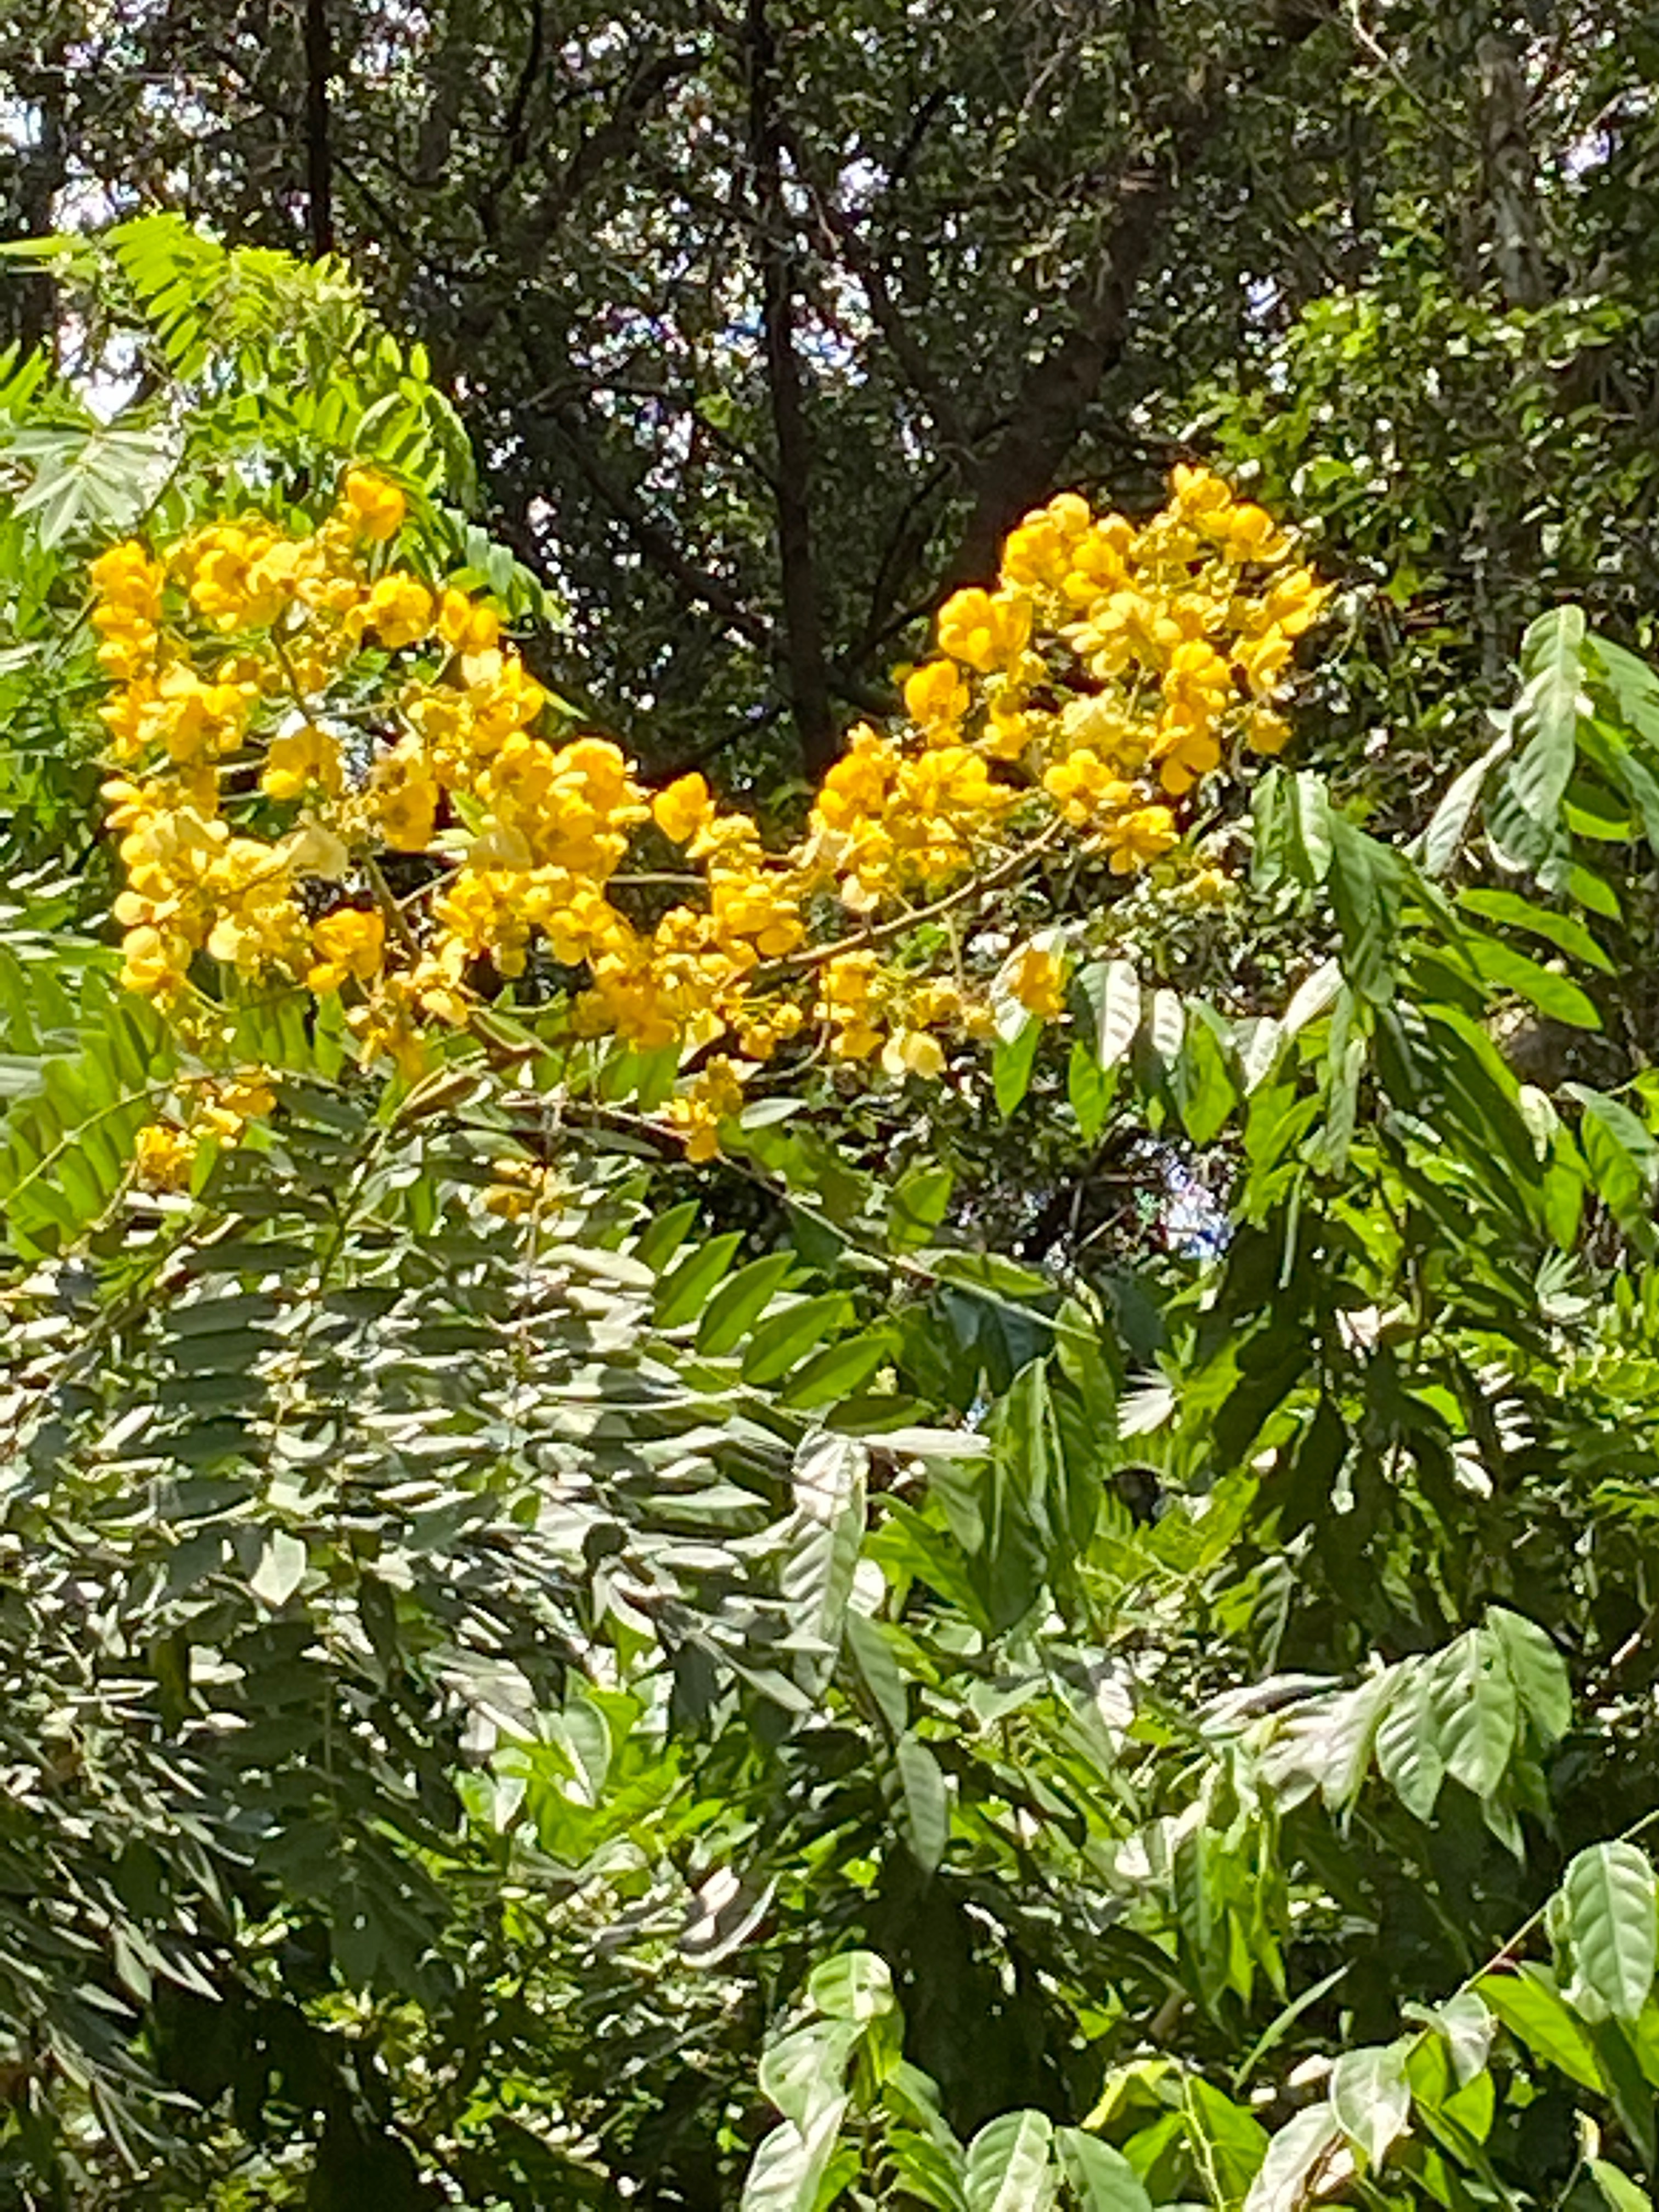 Golden raintree